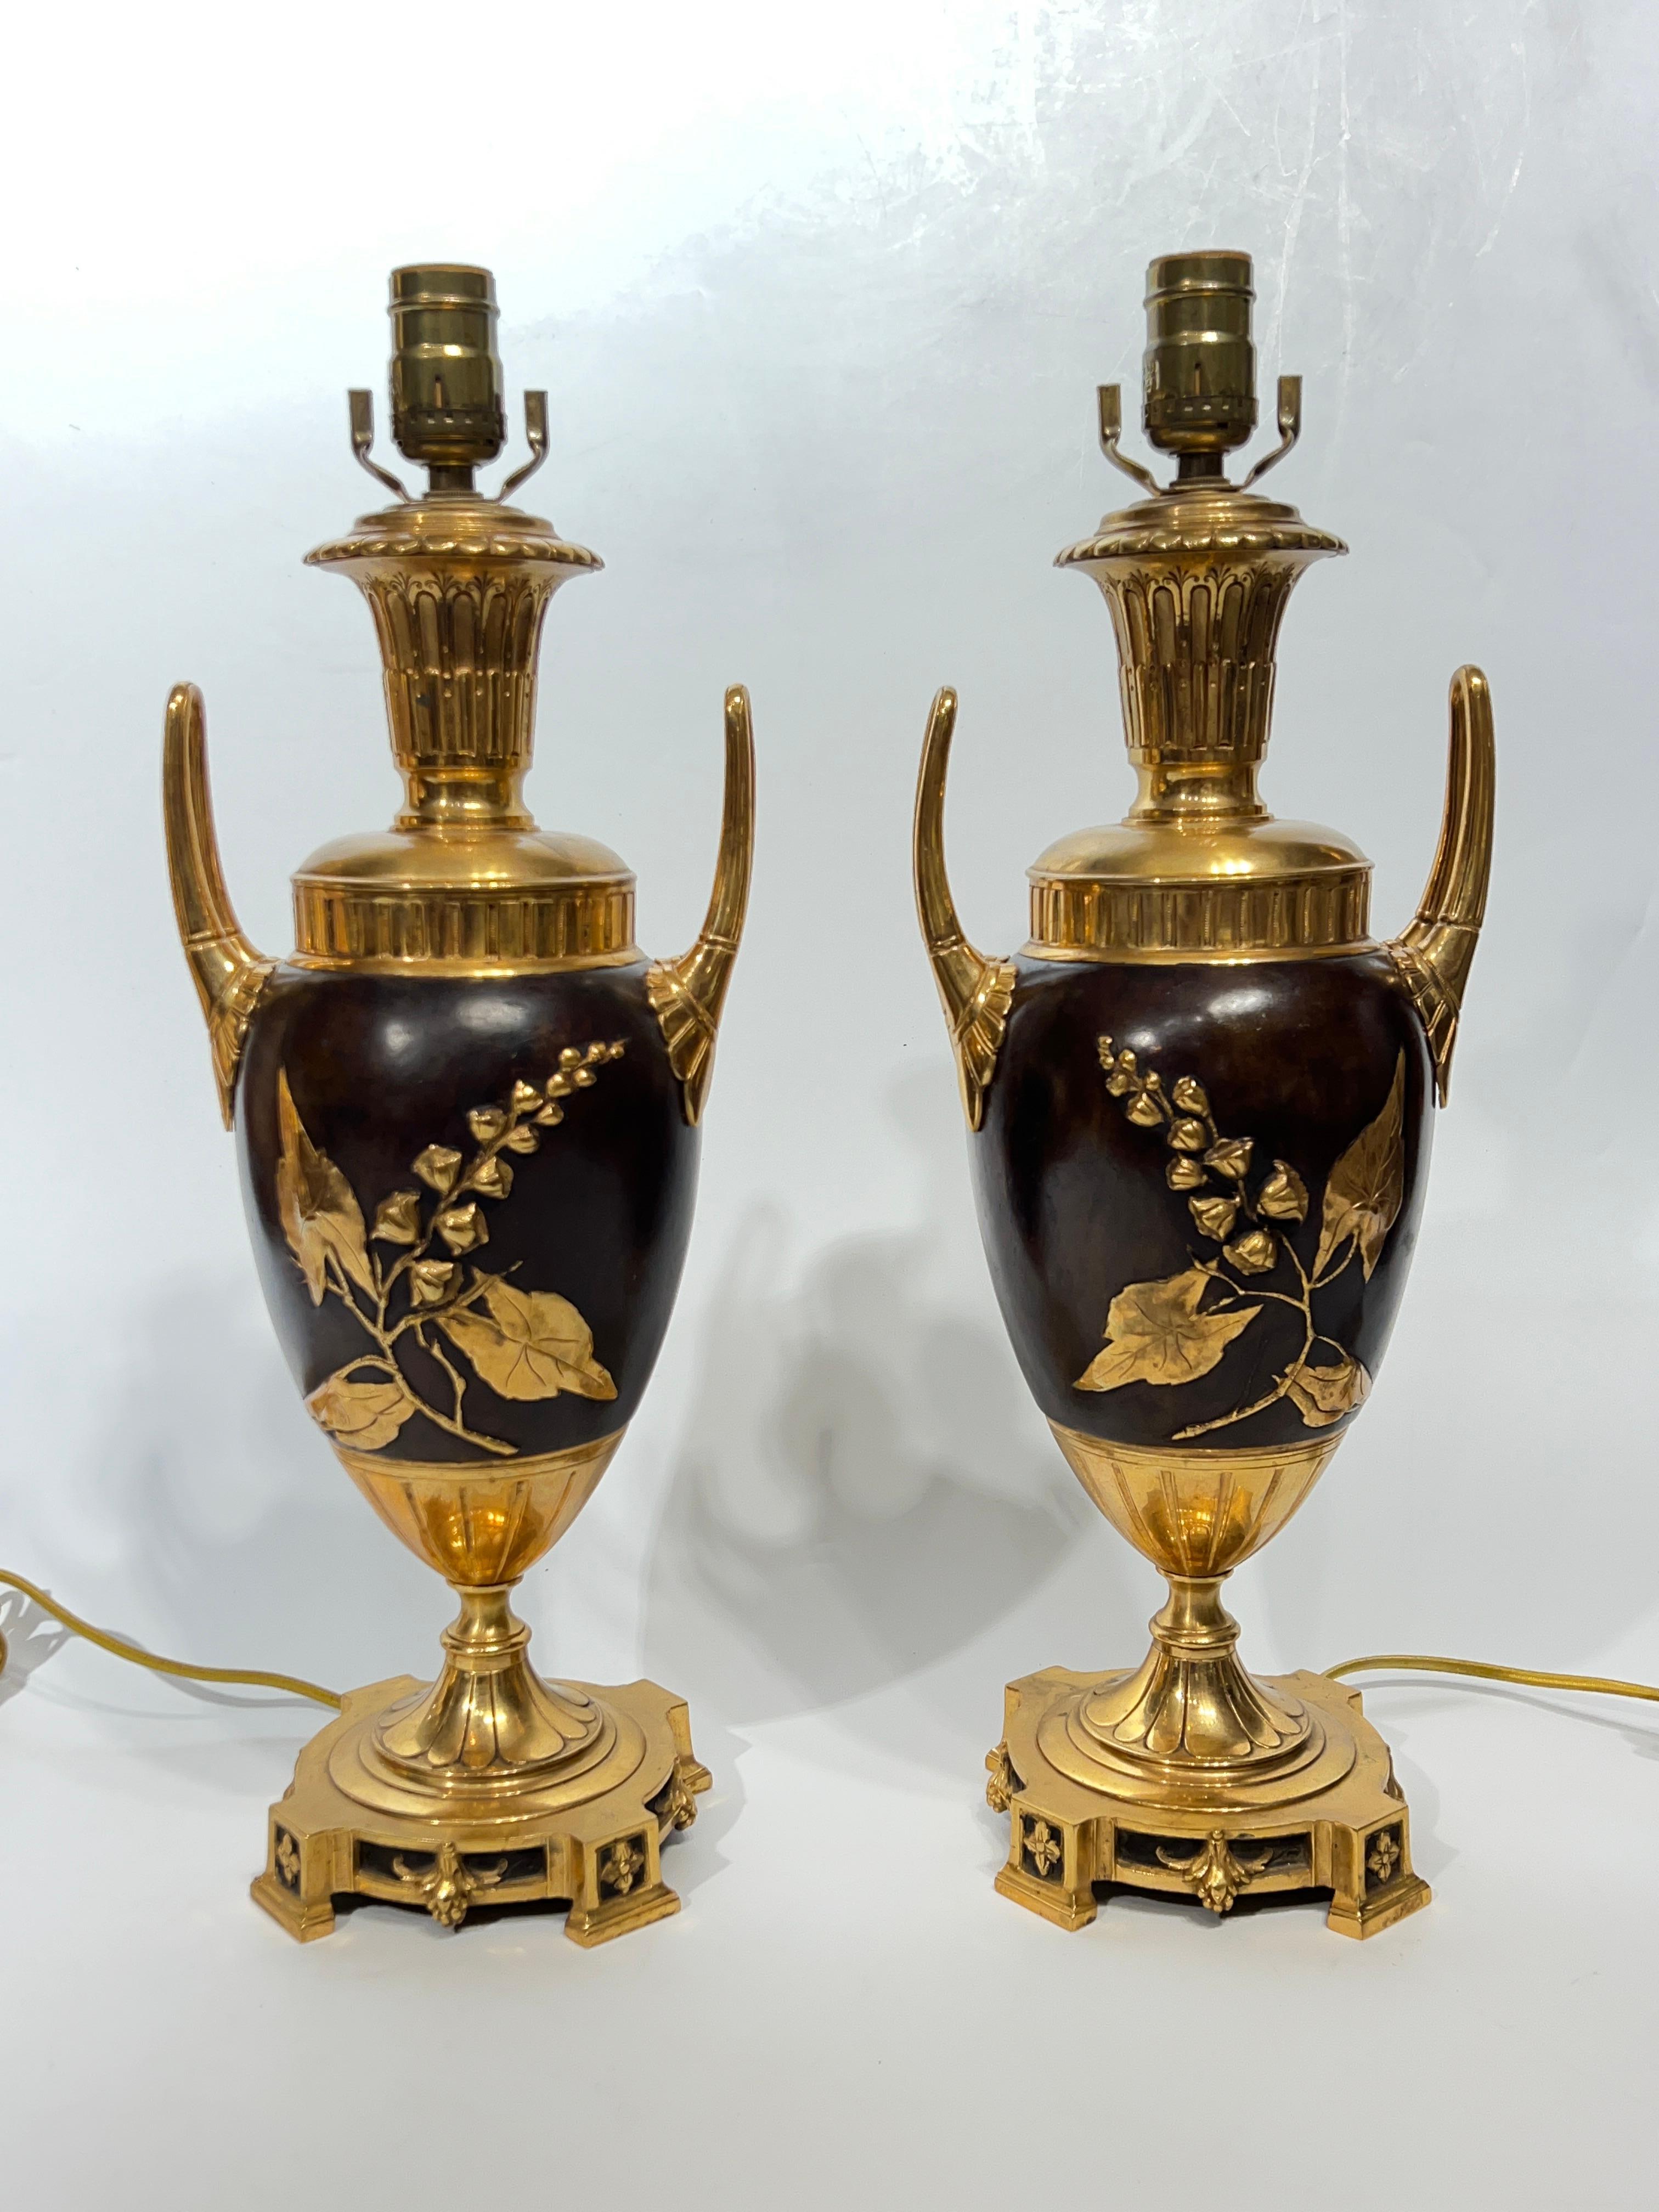 Paar vergoldet und patiniert und git  Bronze-Tischlampen in Urnenform mit Looping-Griff und erhabenen vergoldeten Motiven von blühenden Zweigen.